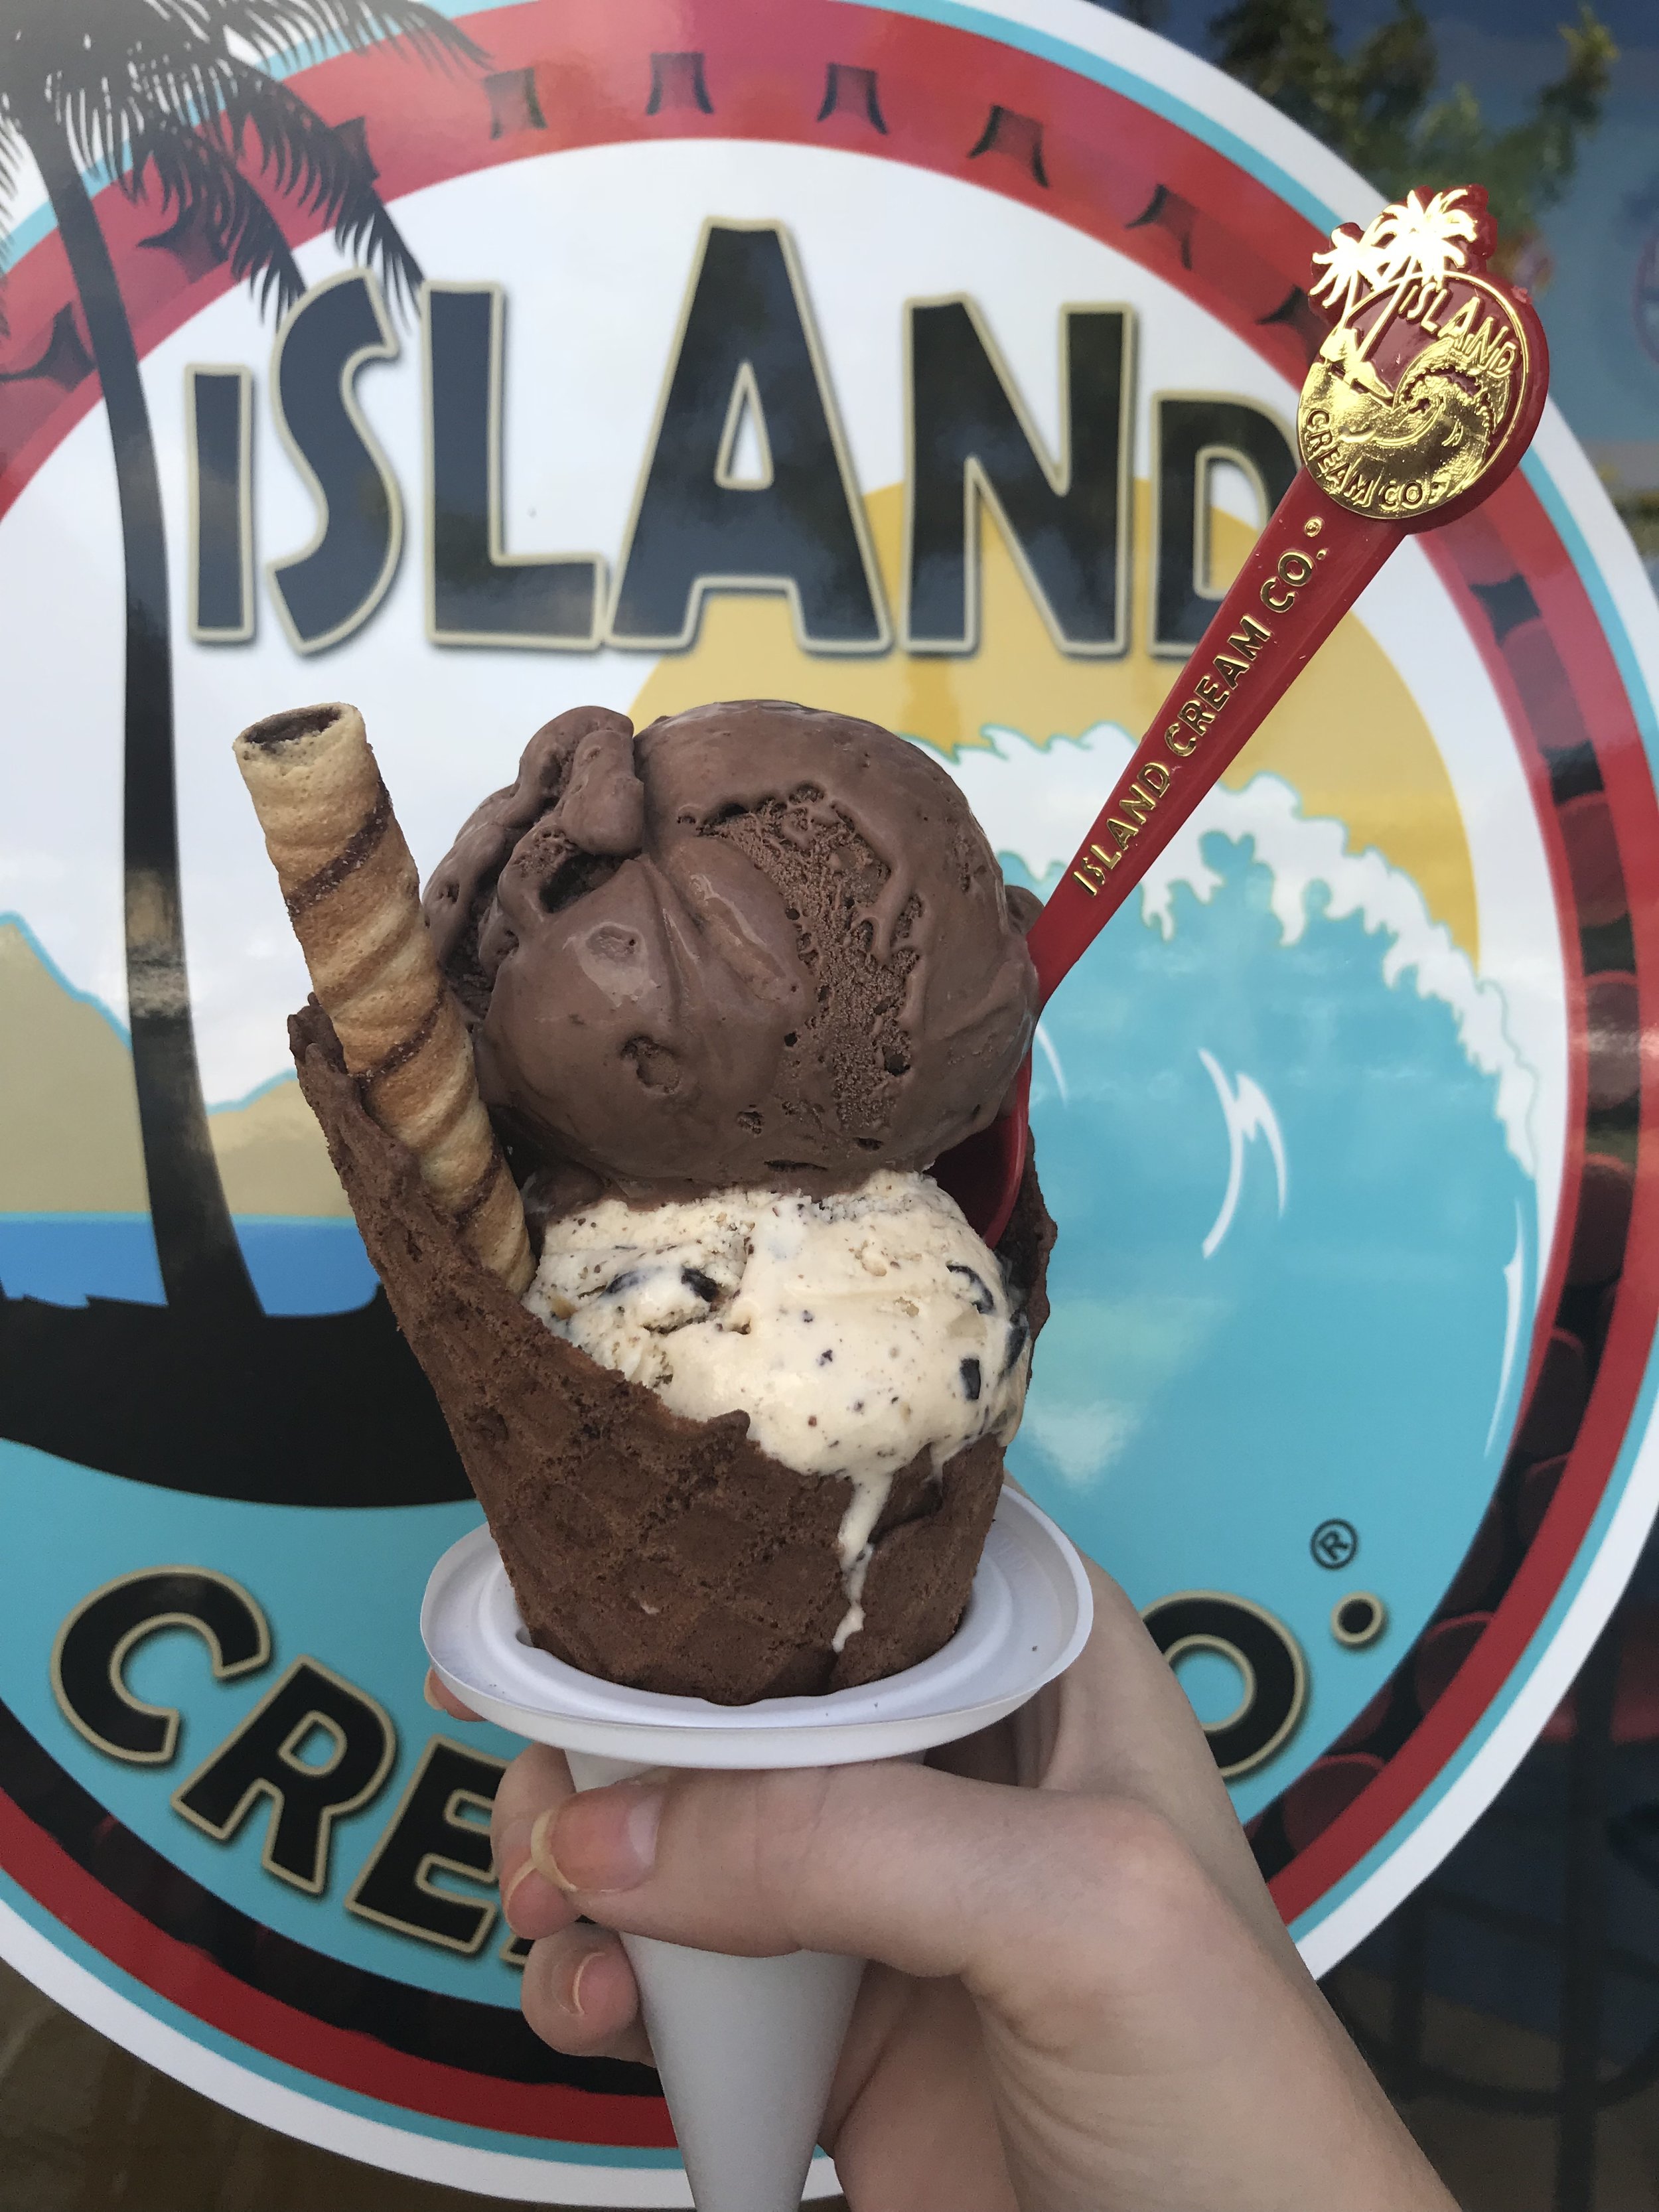 Island Cream Company - Ice Cream in Maui